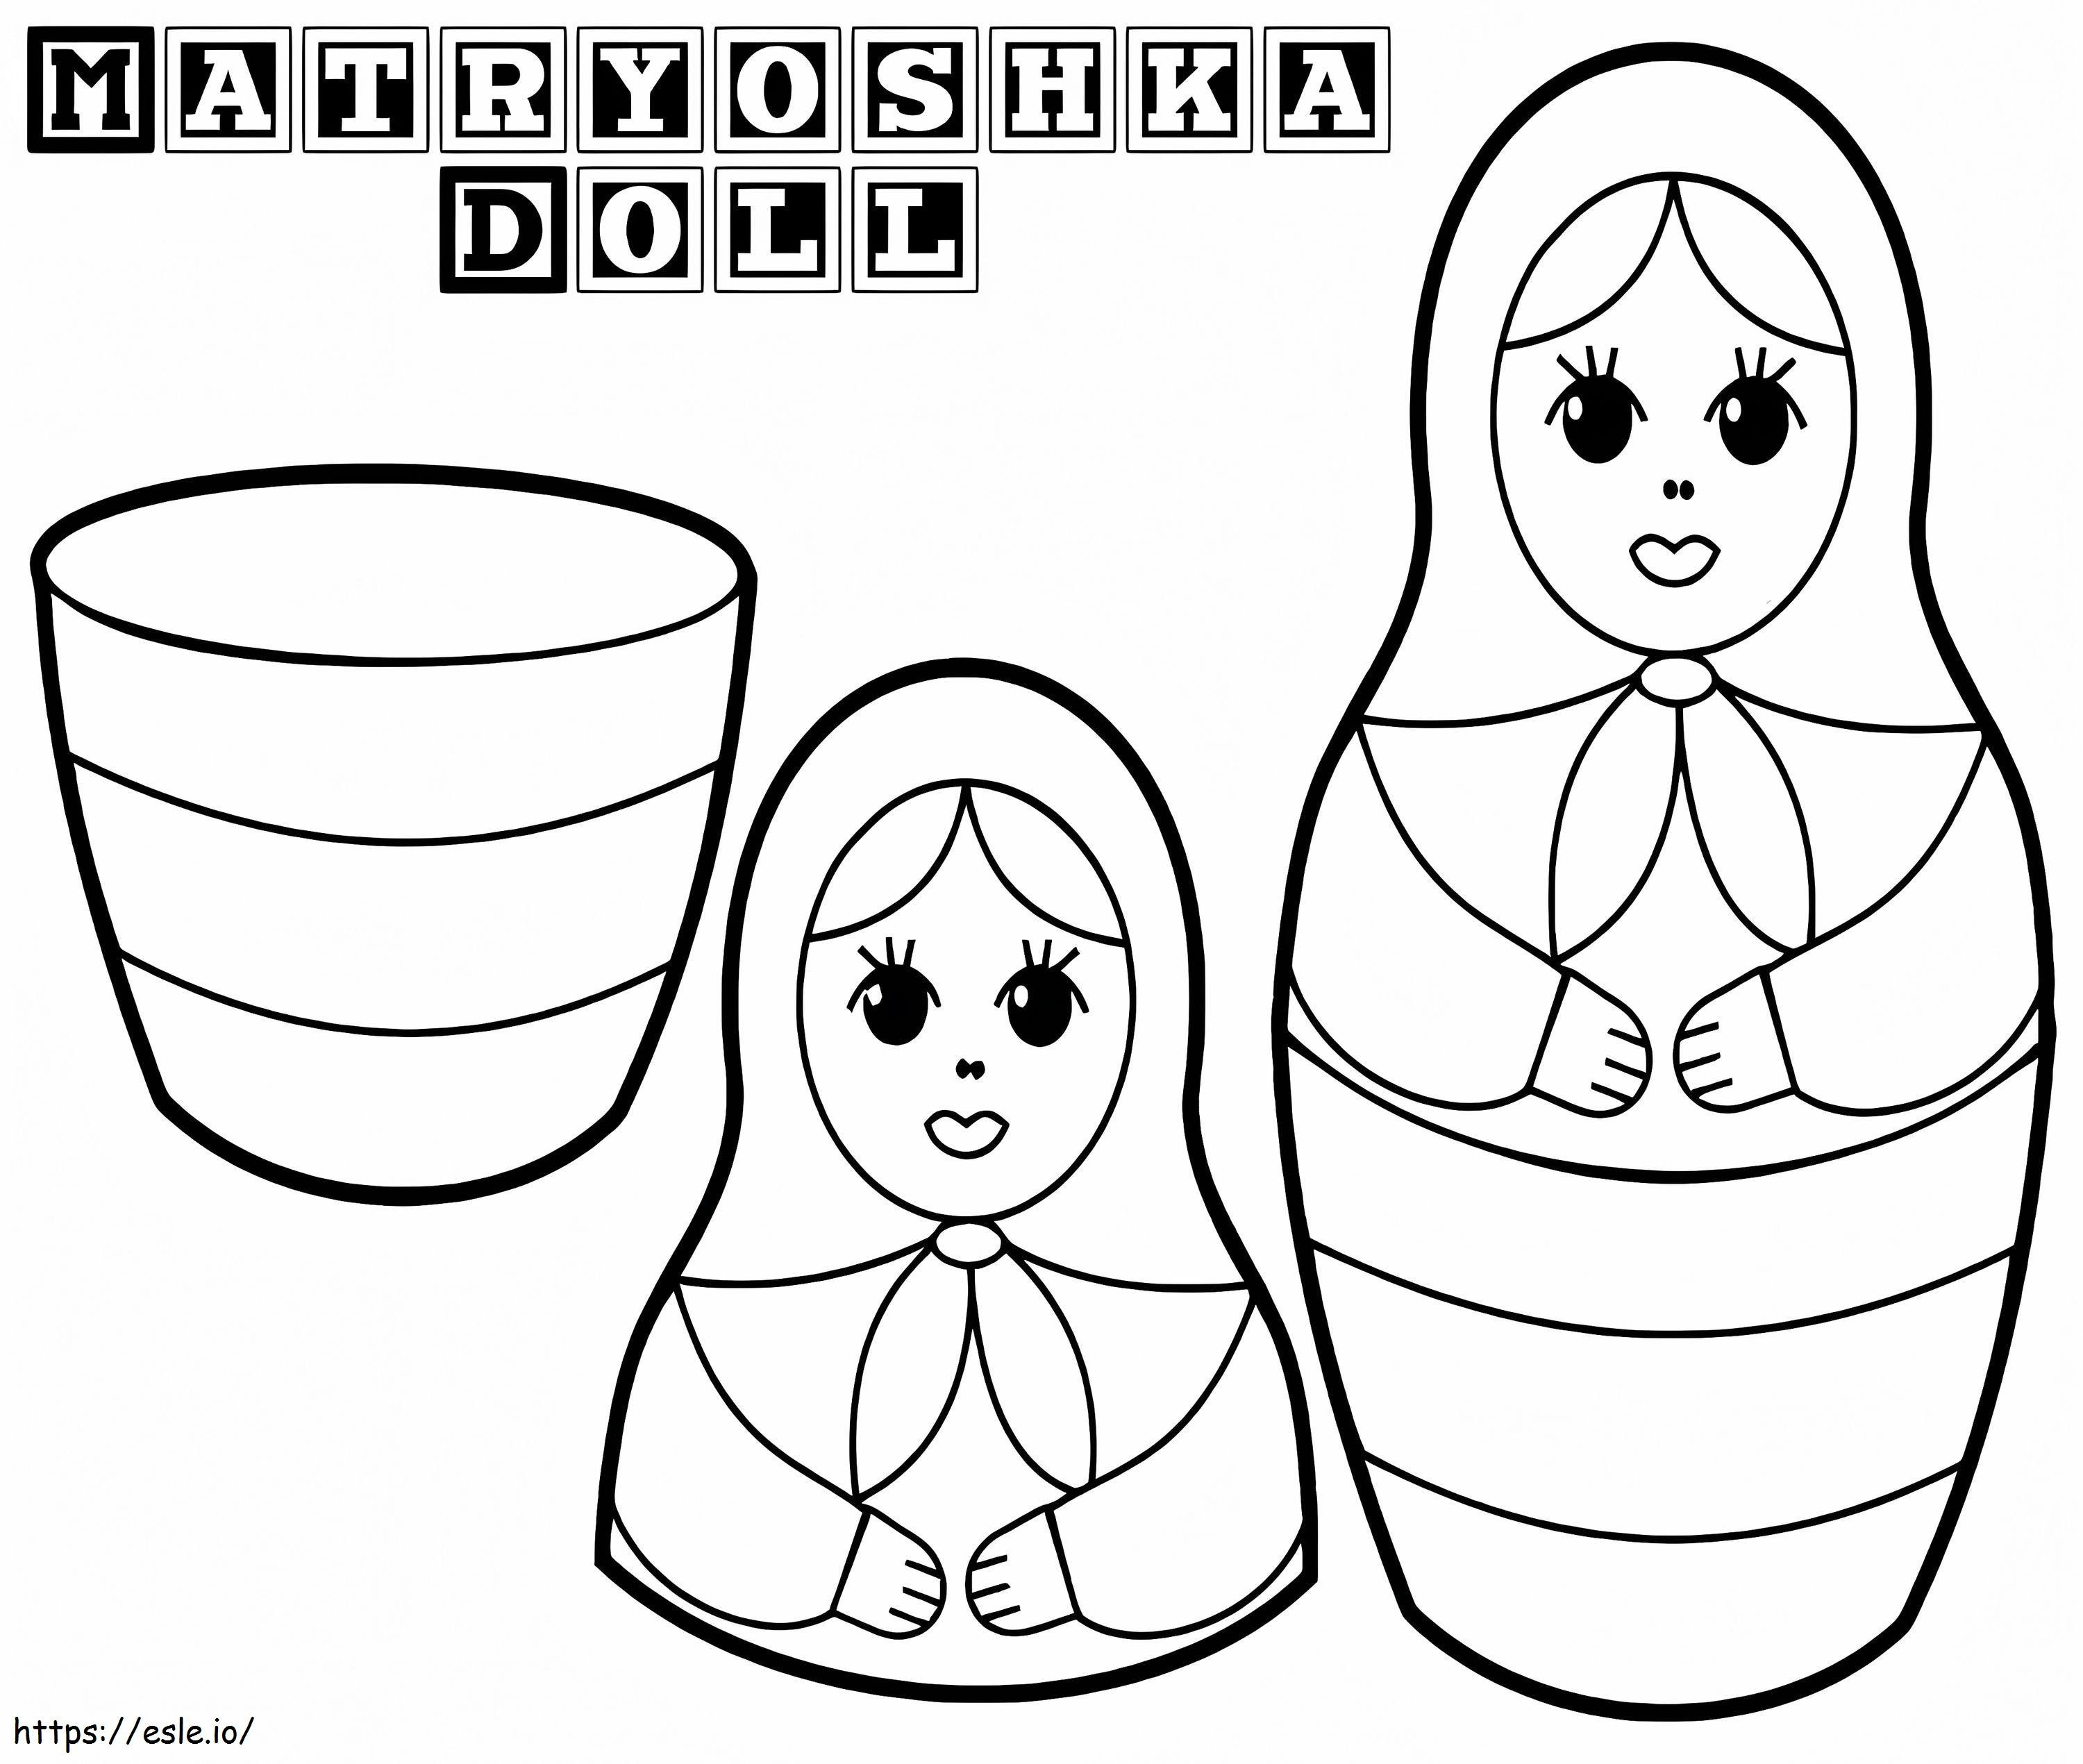 Matryoshka Dolls To Print coloring page